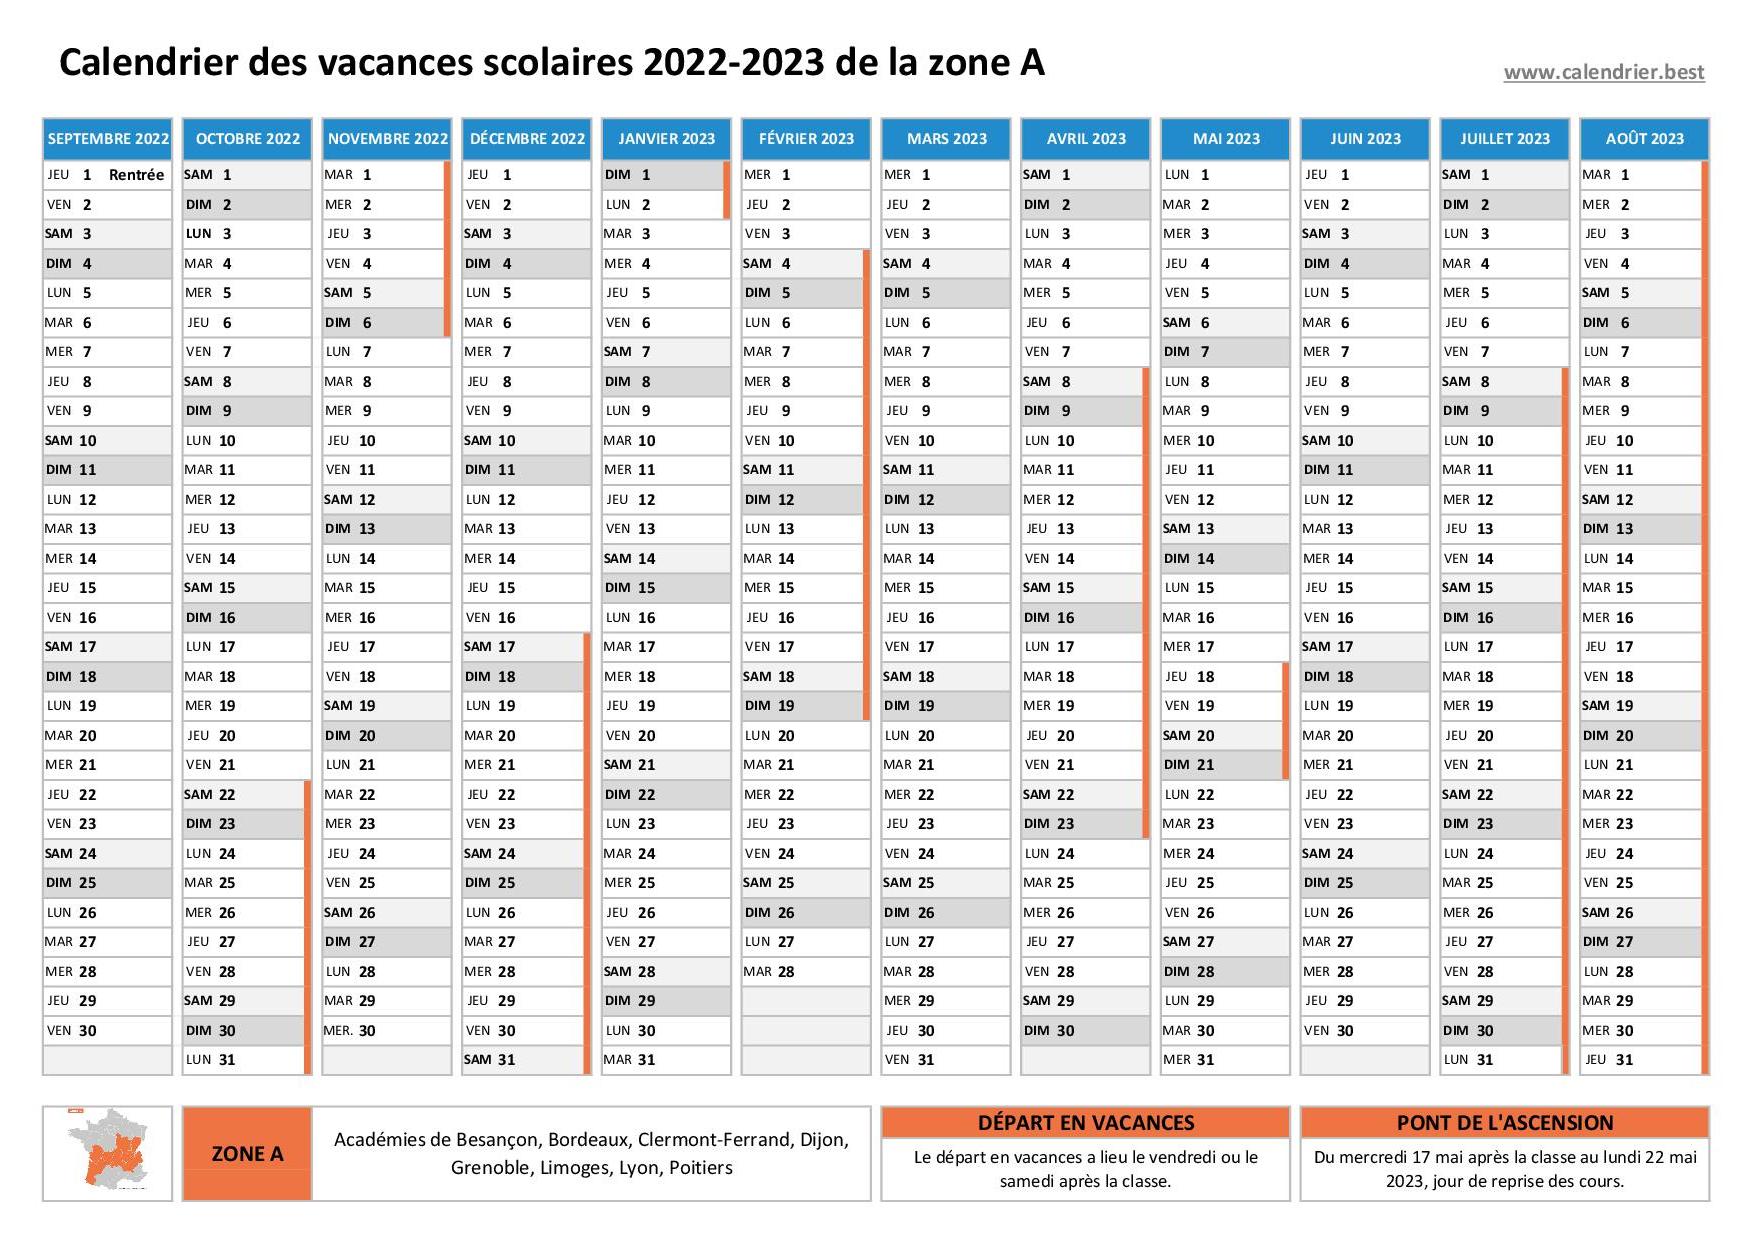 Vacances scolaires 2022 2023 Limoges : dates et calendrier scolaire 2022- 2023